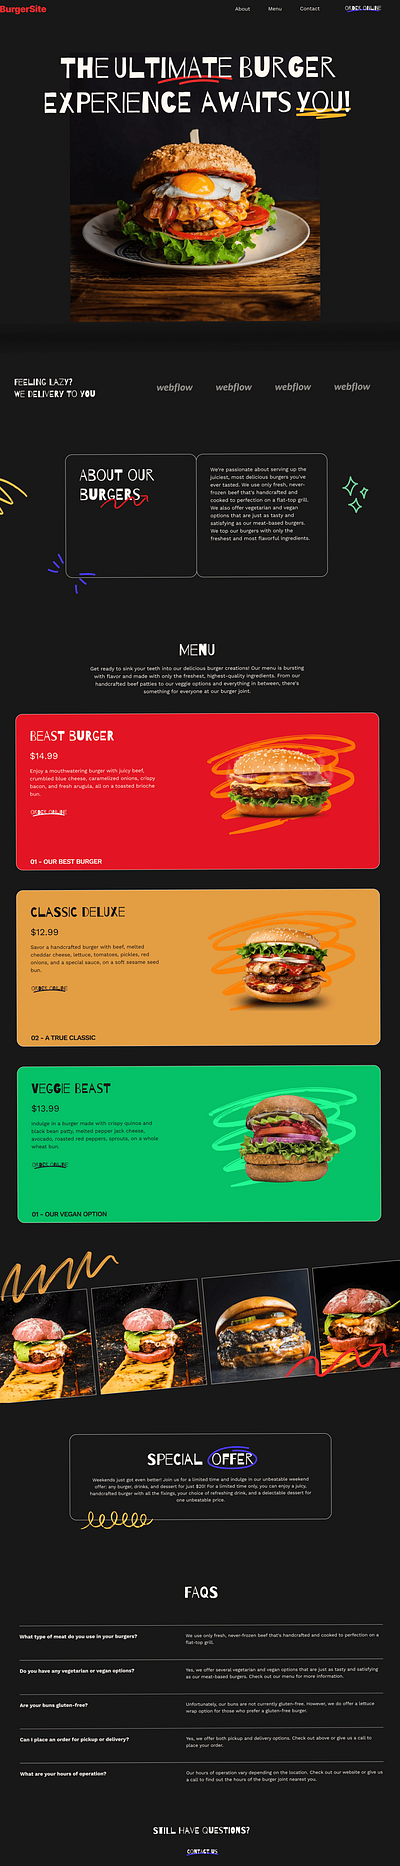 Ux/Ui Mock Up Design For Burger Site adobe illustrator adobe photoshop adobe xd branding design figma graphic design illustration ui ux